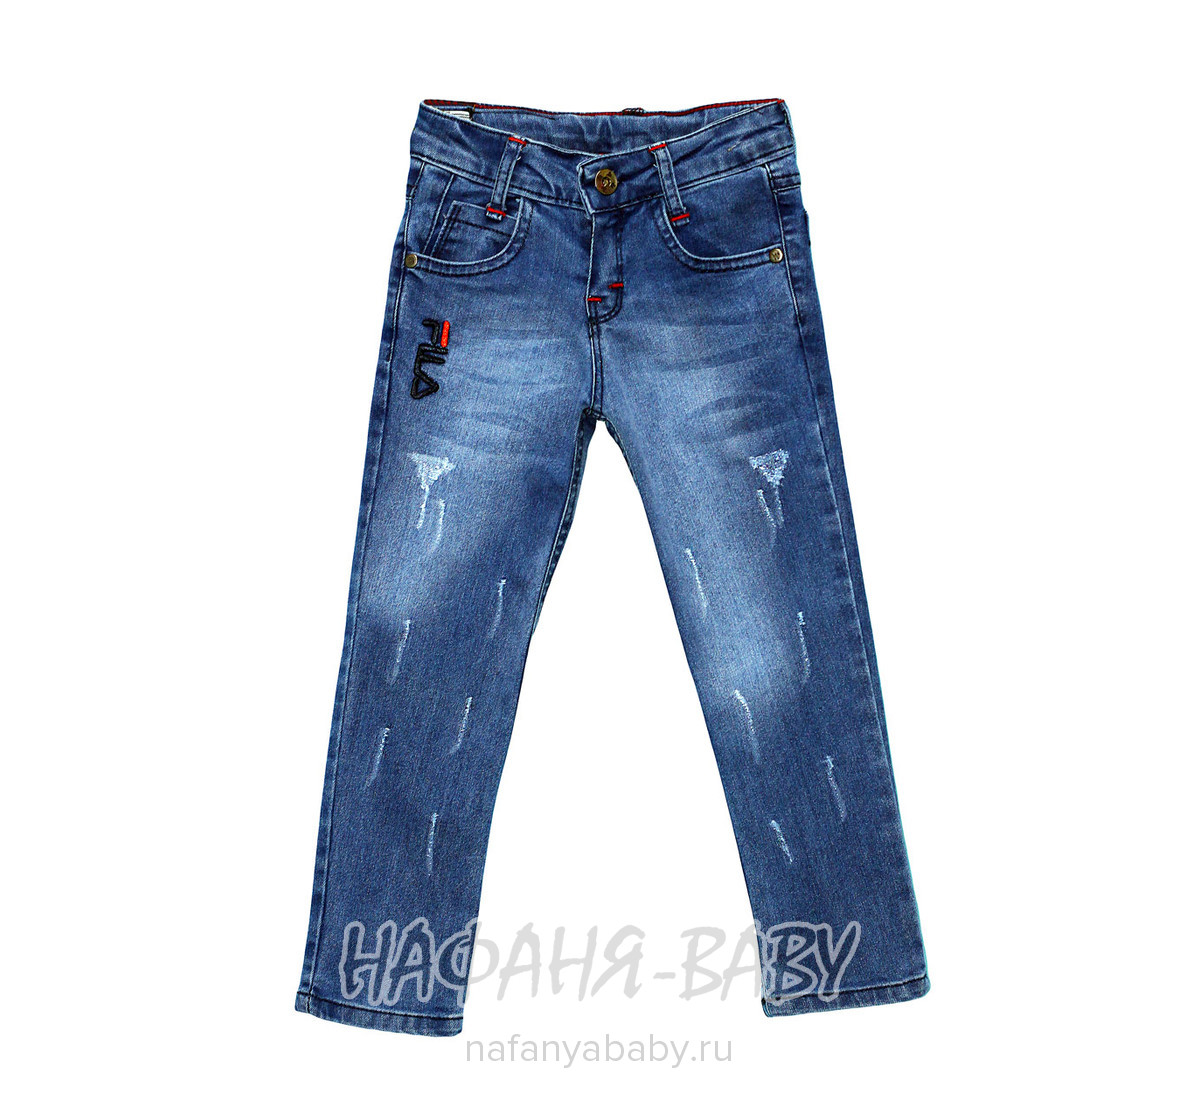 Подростковые джинсы Sercino арт: 17013, 10-15 лет, 5-9 лет, оптом Турция